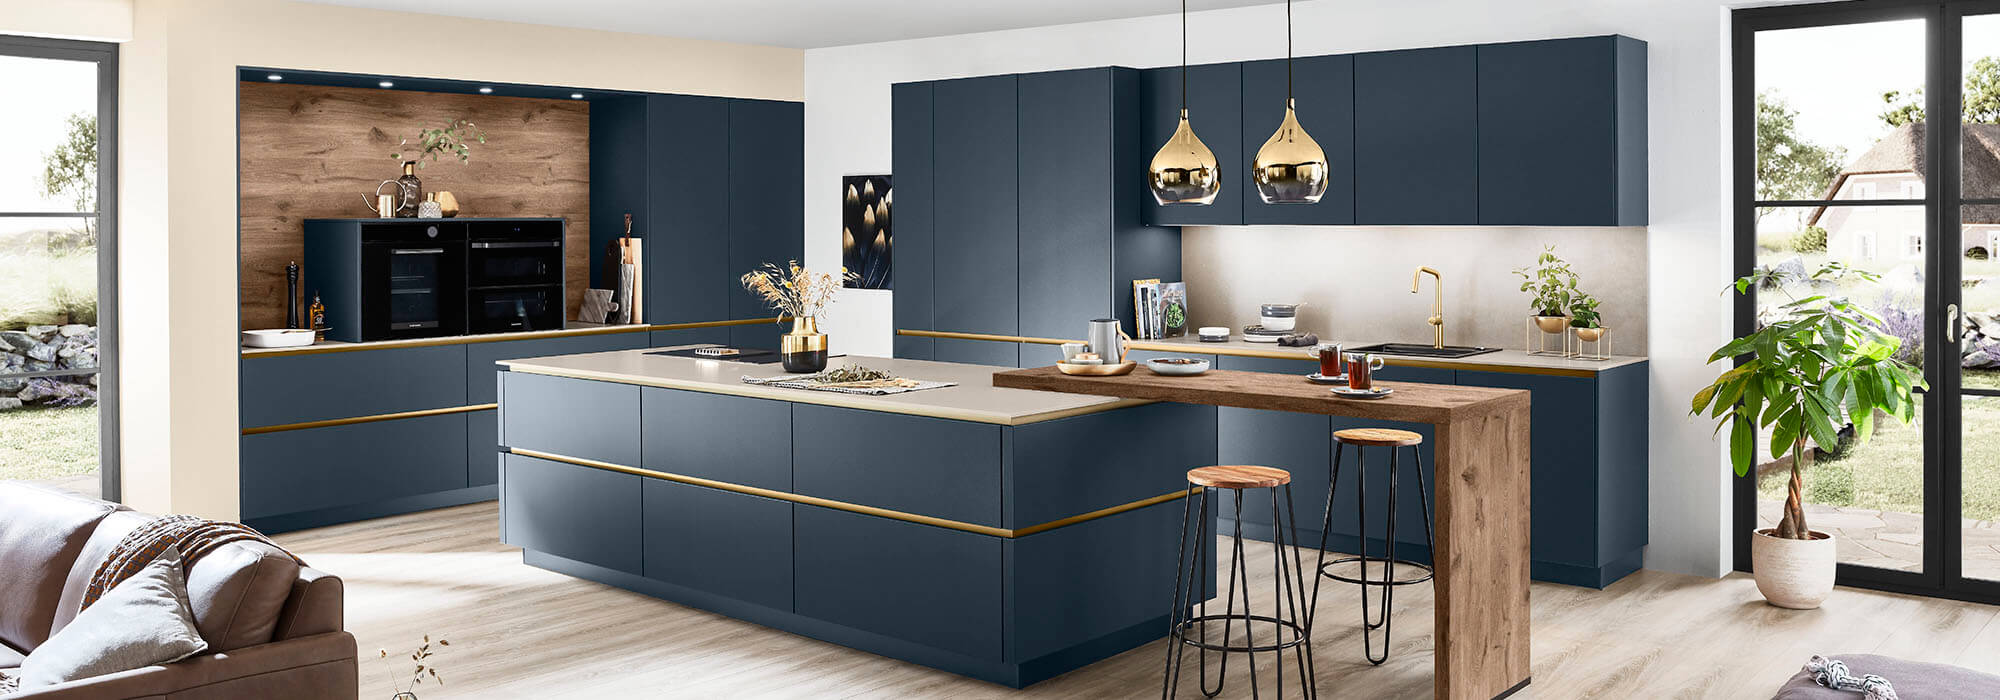 blauwe keuken modern